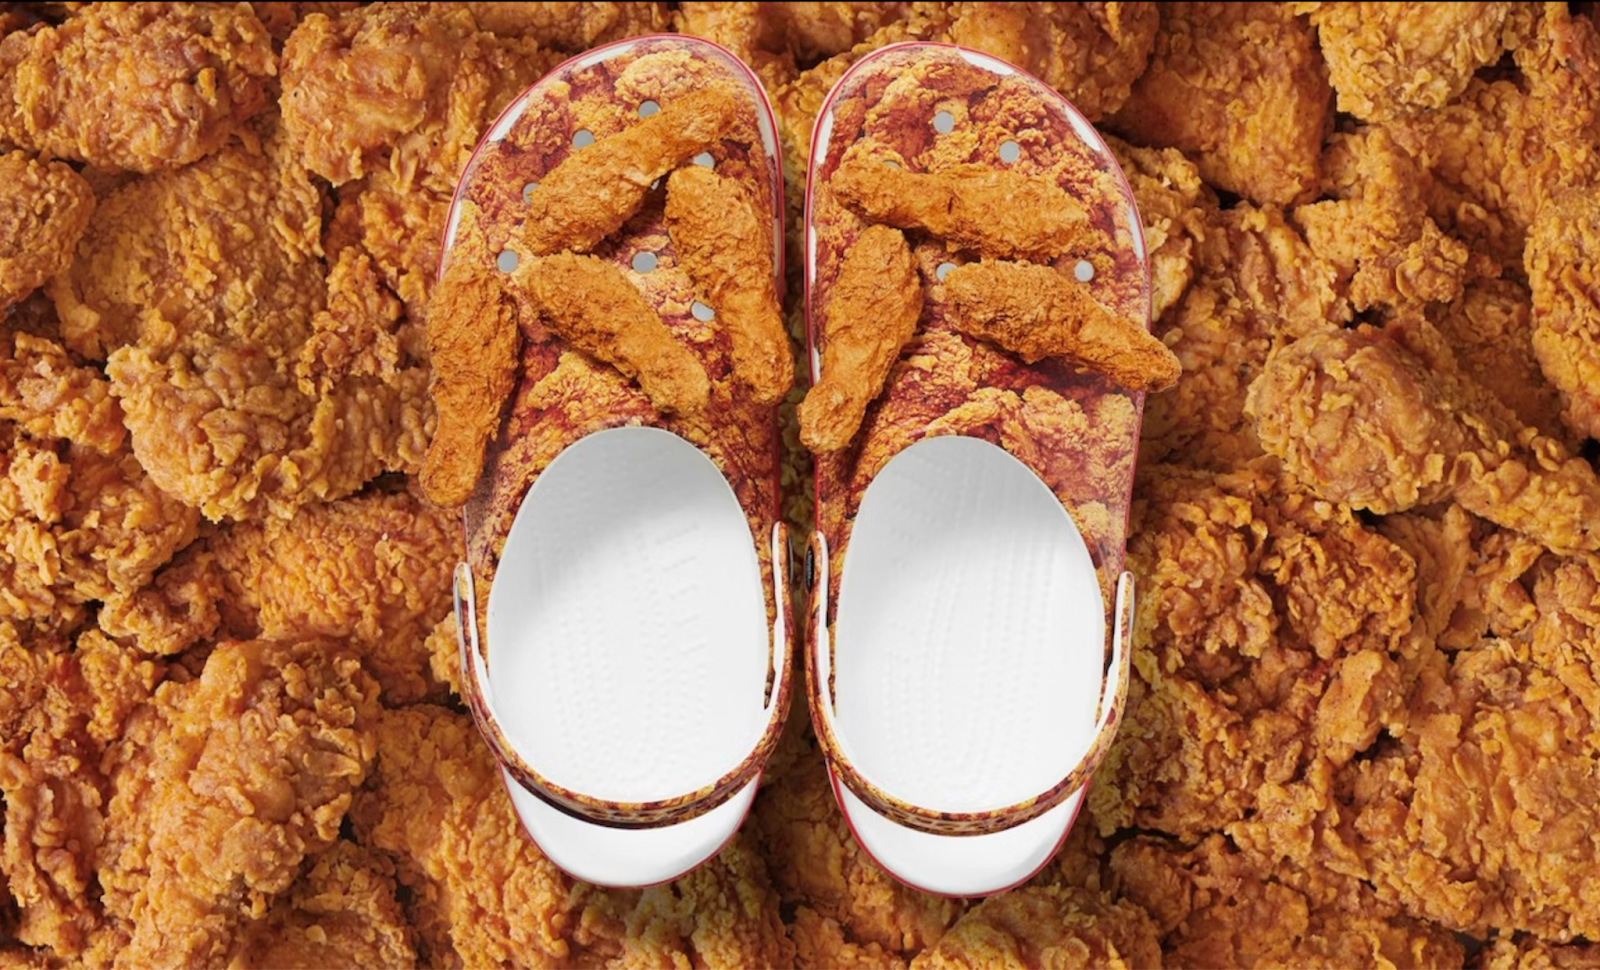 KFC Crocs Guerrilla Marketing